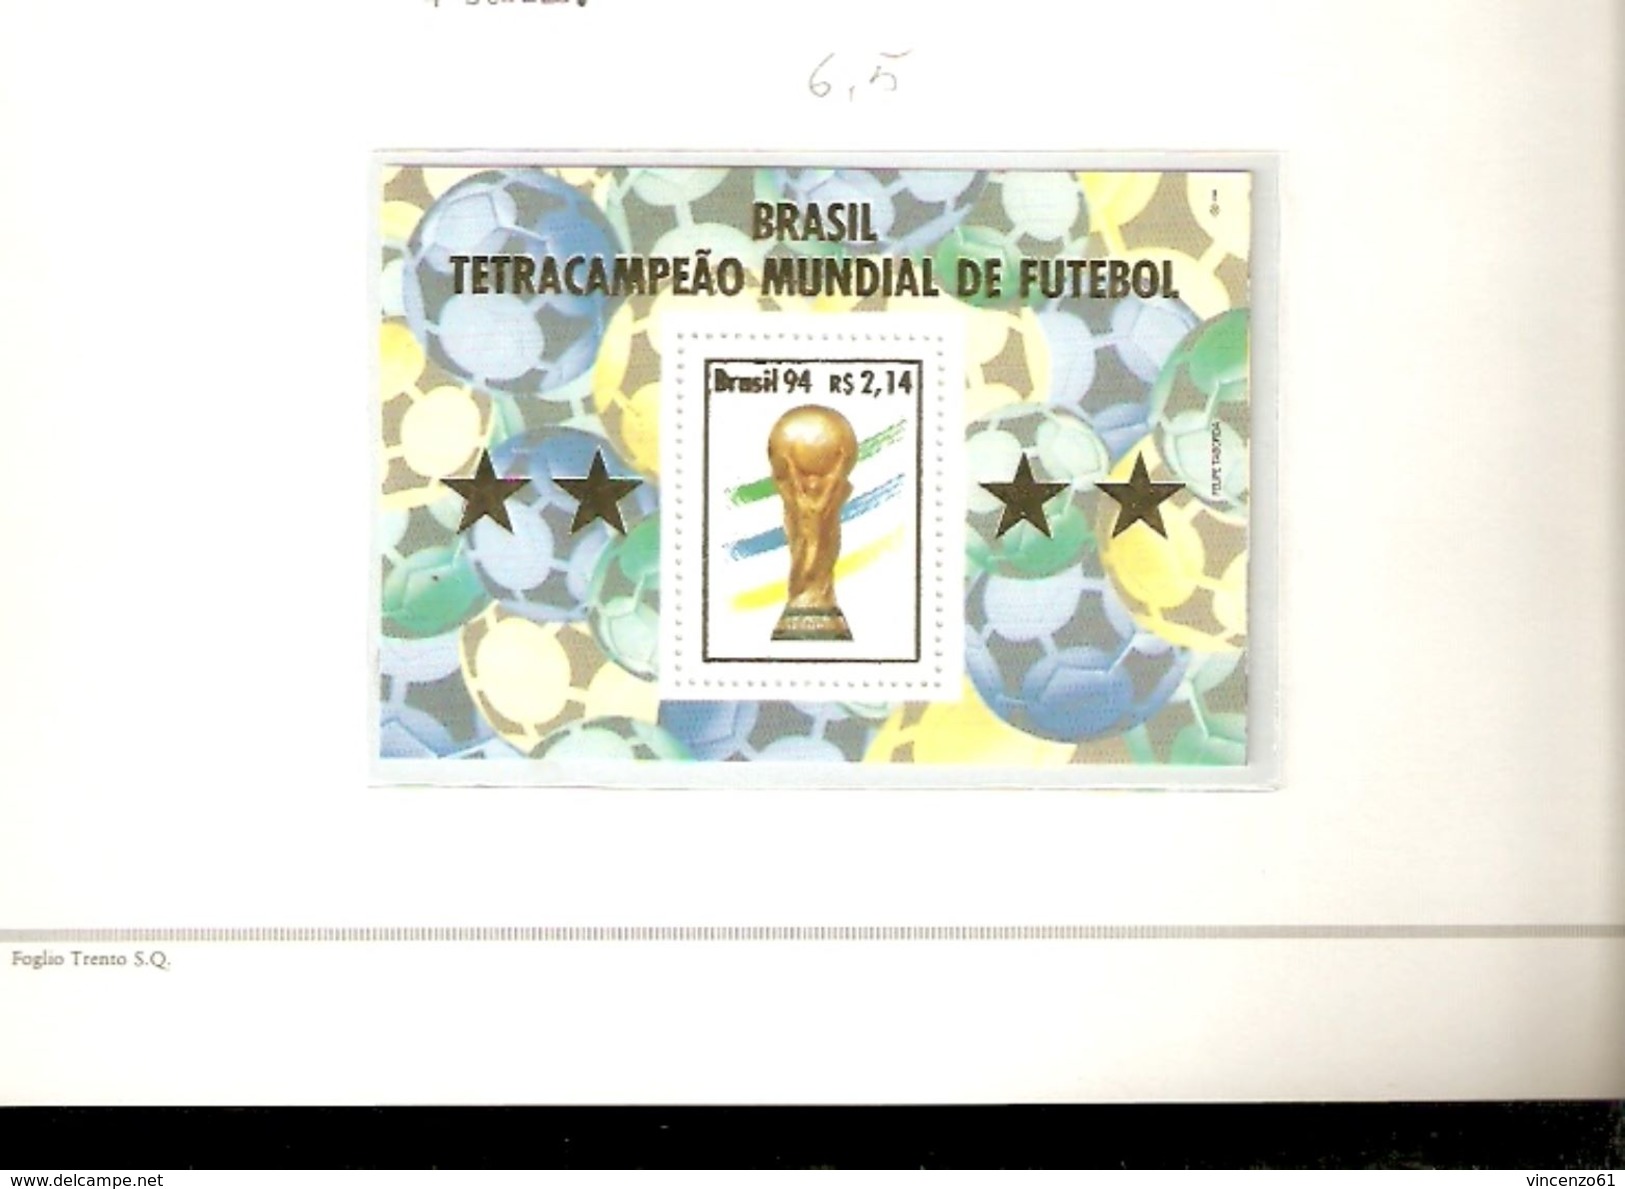 BRASILE BRASIL FIFA WORLD CUP 1994 USA 94 - 1994 – USA